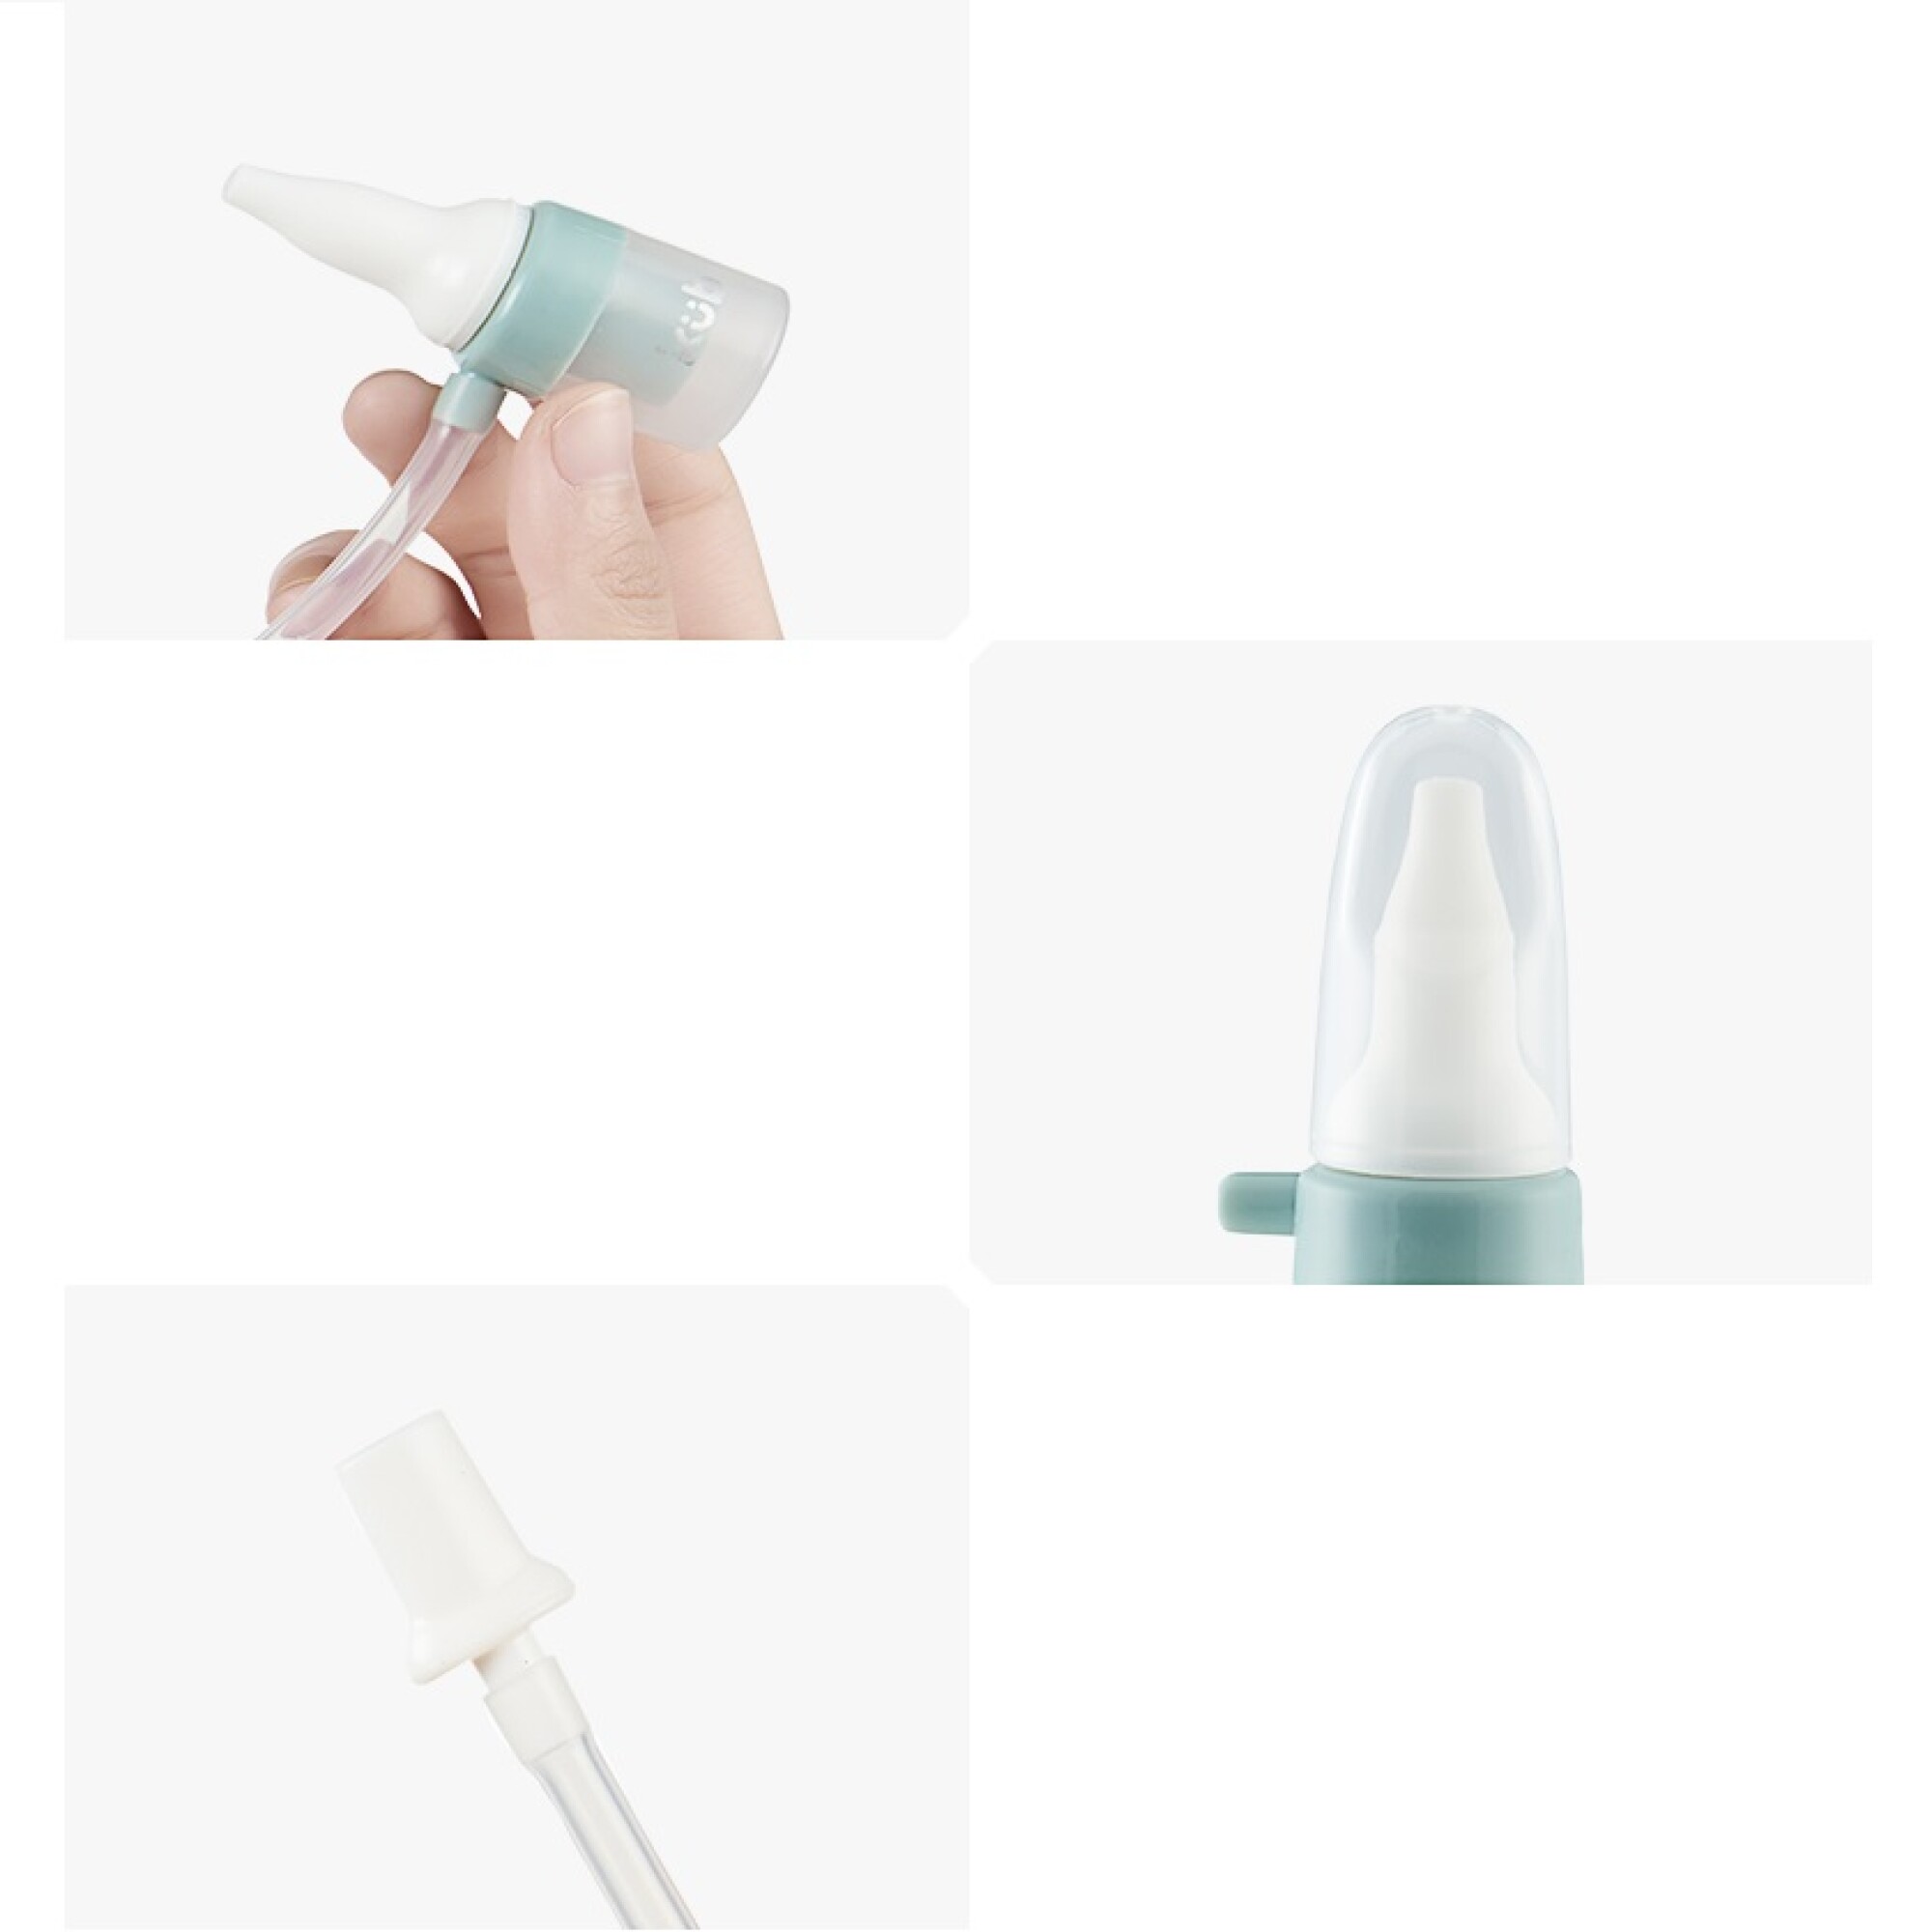  Aspirador nasal, aspirador nasal eléctrico, portátil